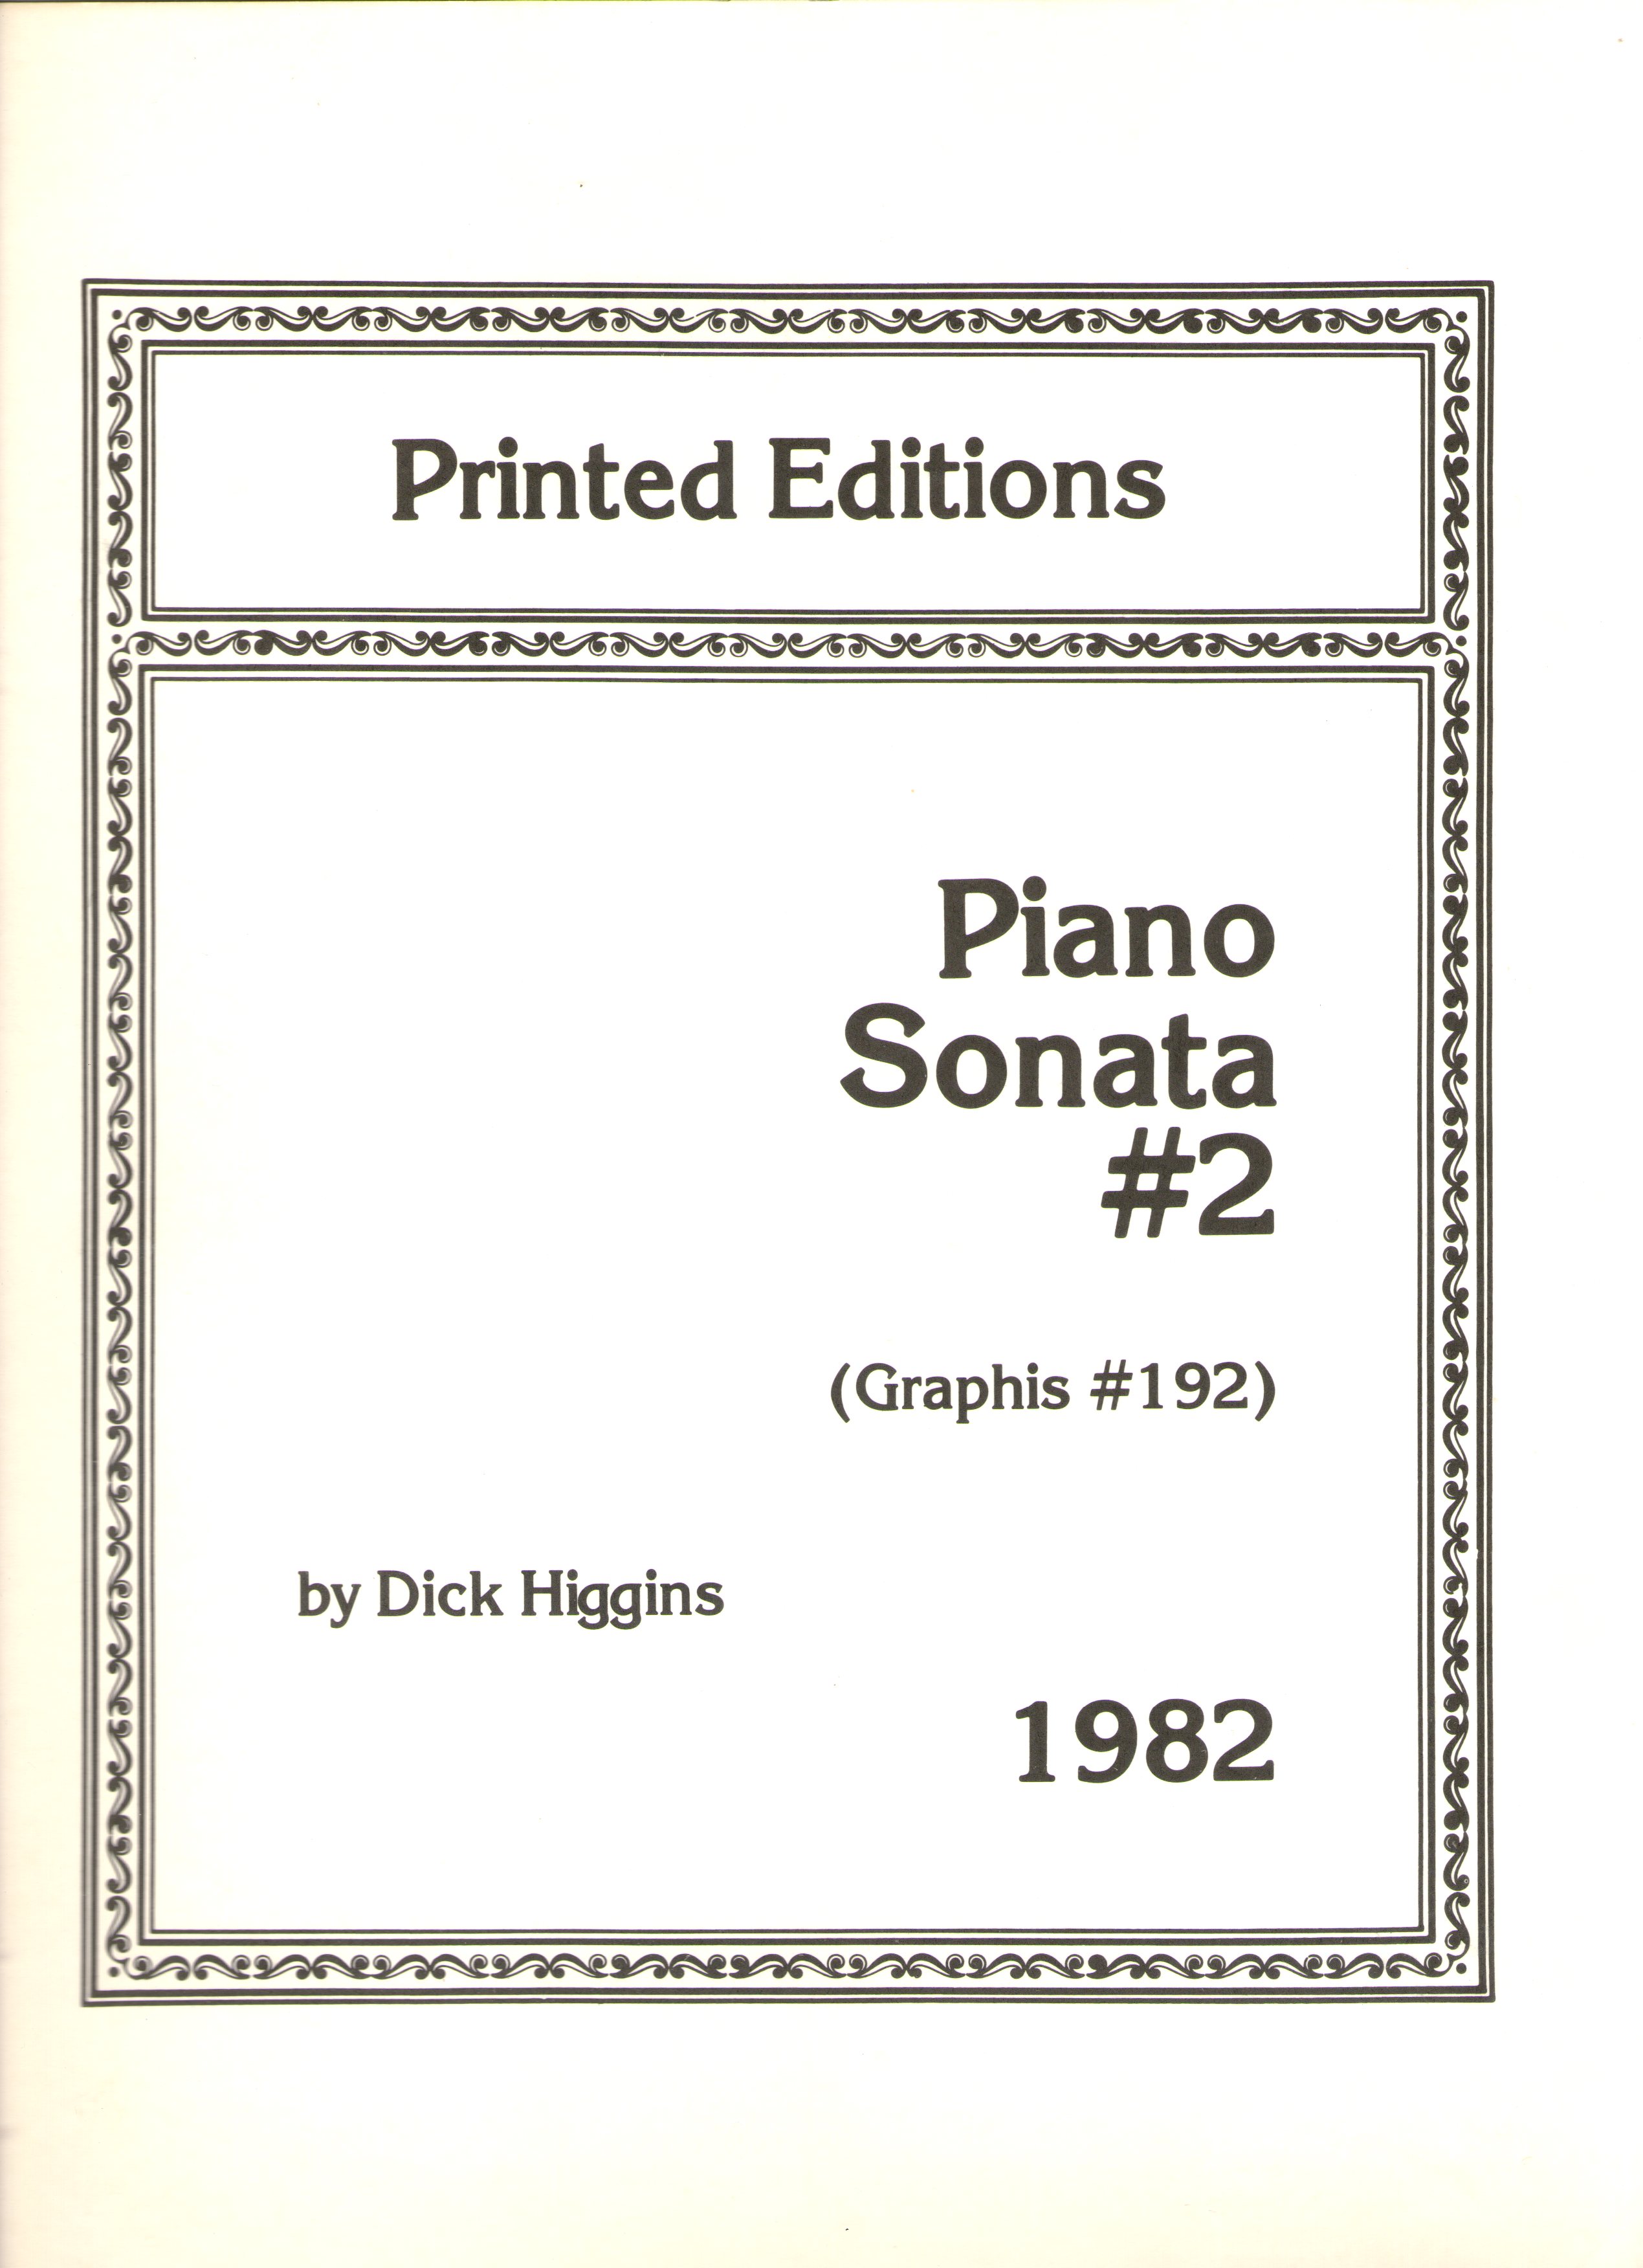 higgins_piano_sonata_c